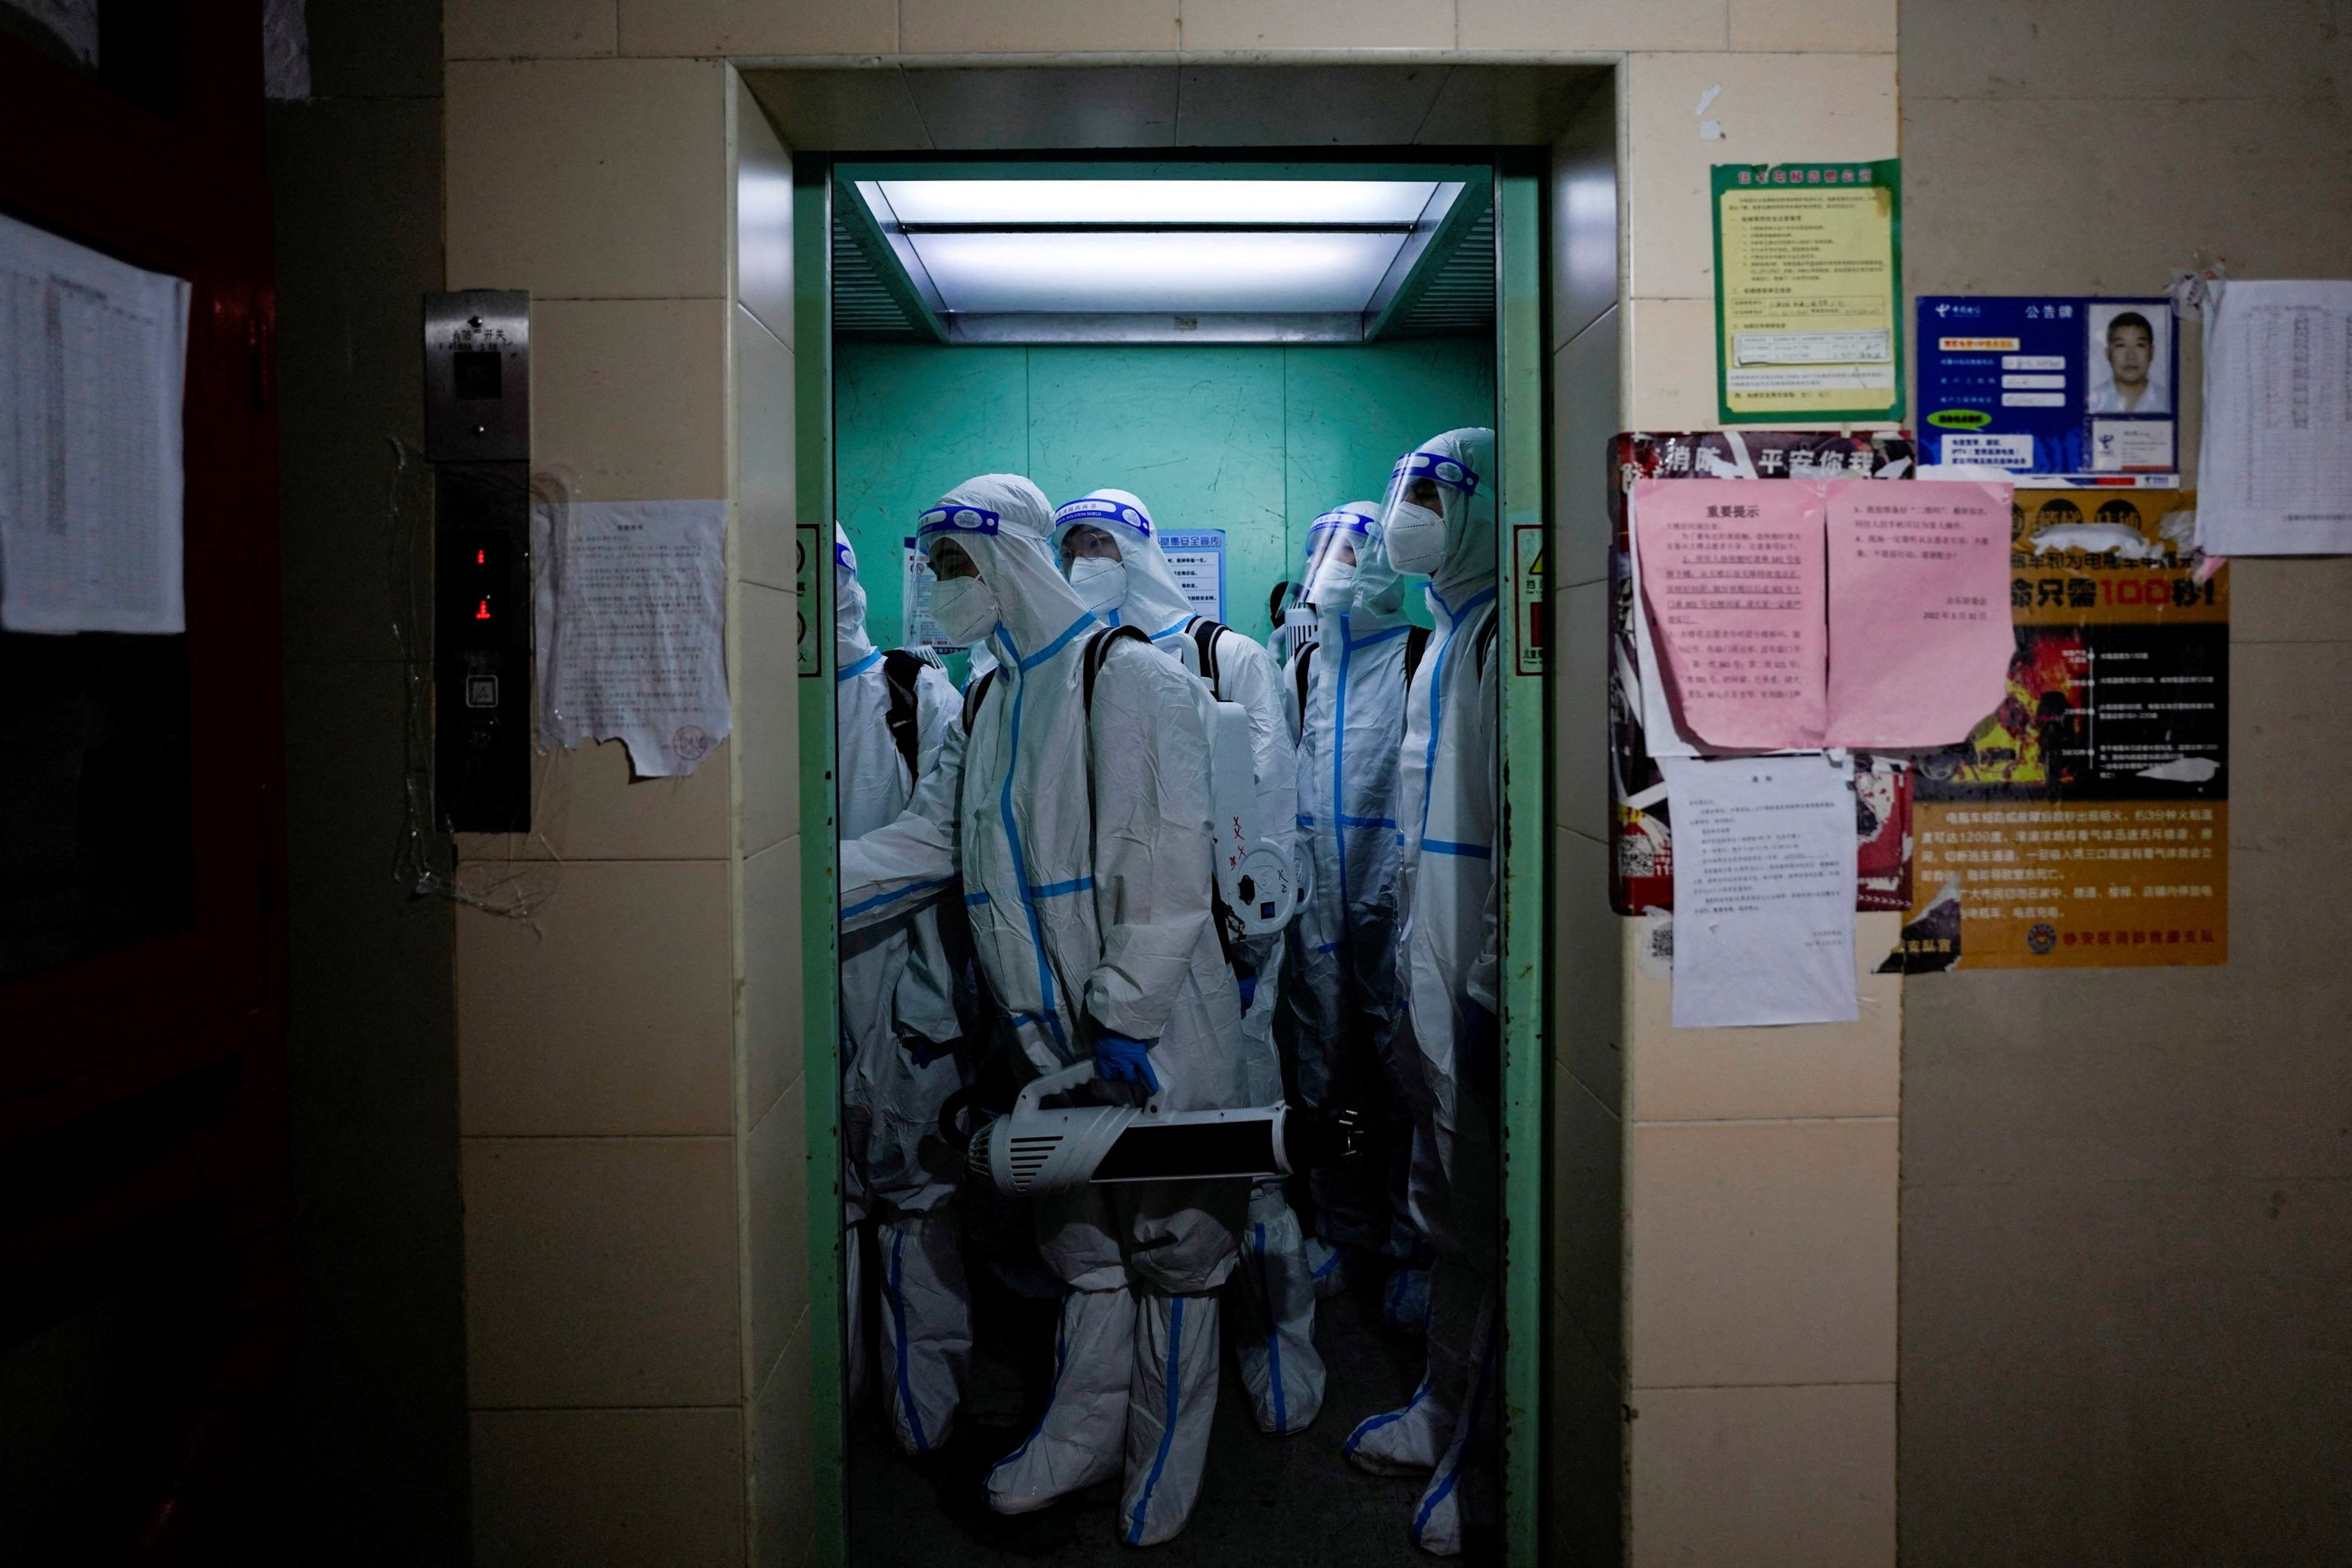 Un equipo de sanitarios vestidos con trajes de protección contra el COVID-19 desinfectan un área residencial de Shanghái (China), confinada por el aumento de positivos.